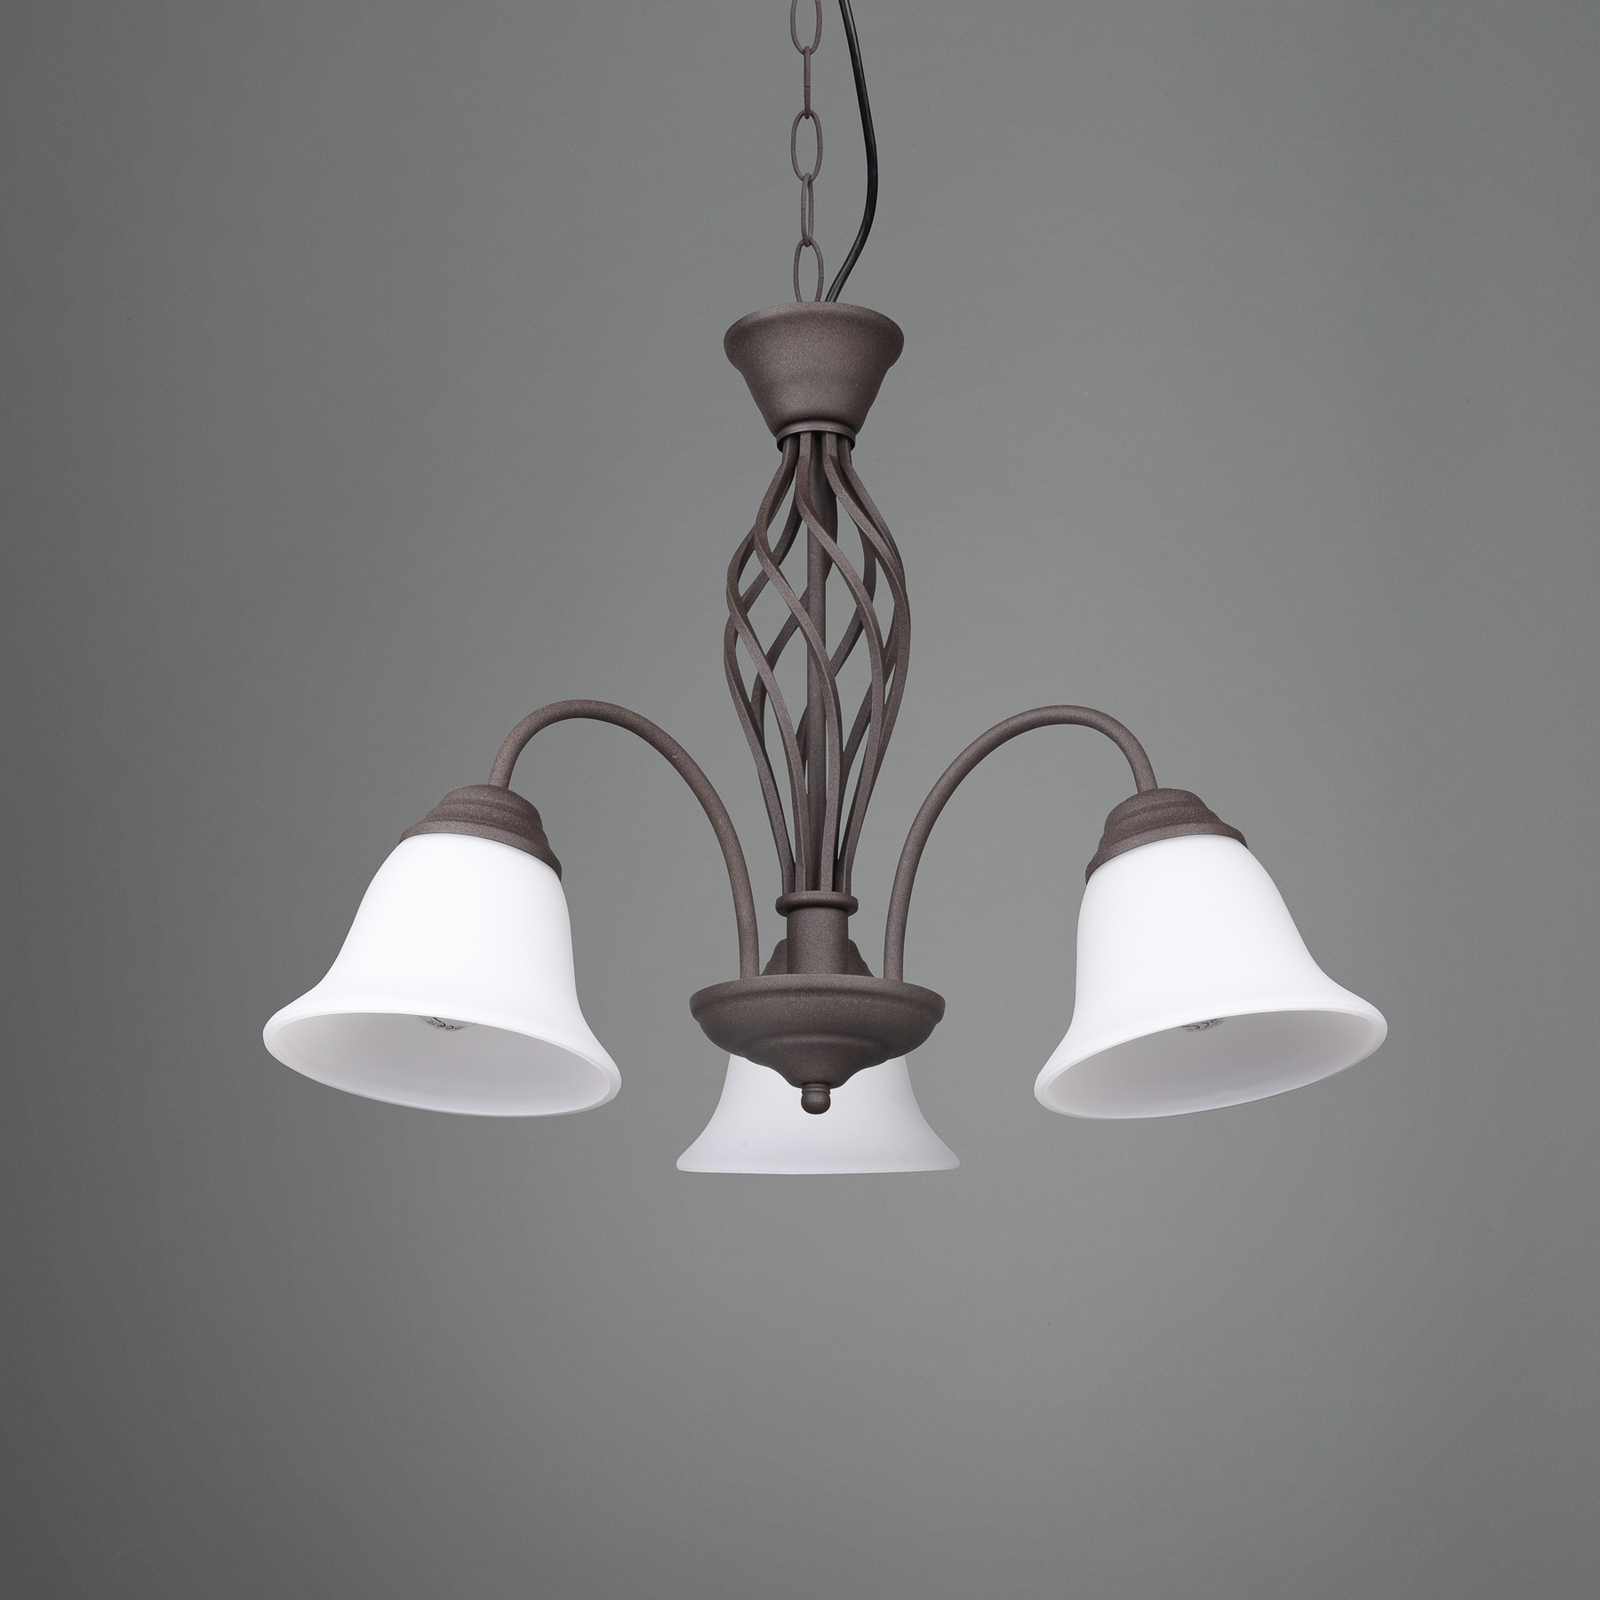 Hanglamp Rustica, roestkleuren, 3-lamps